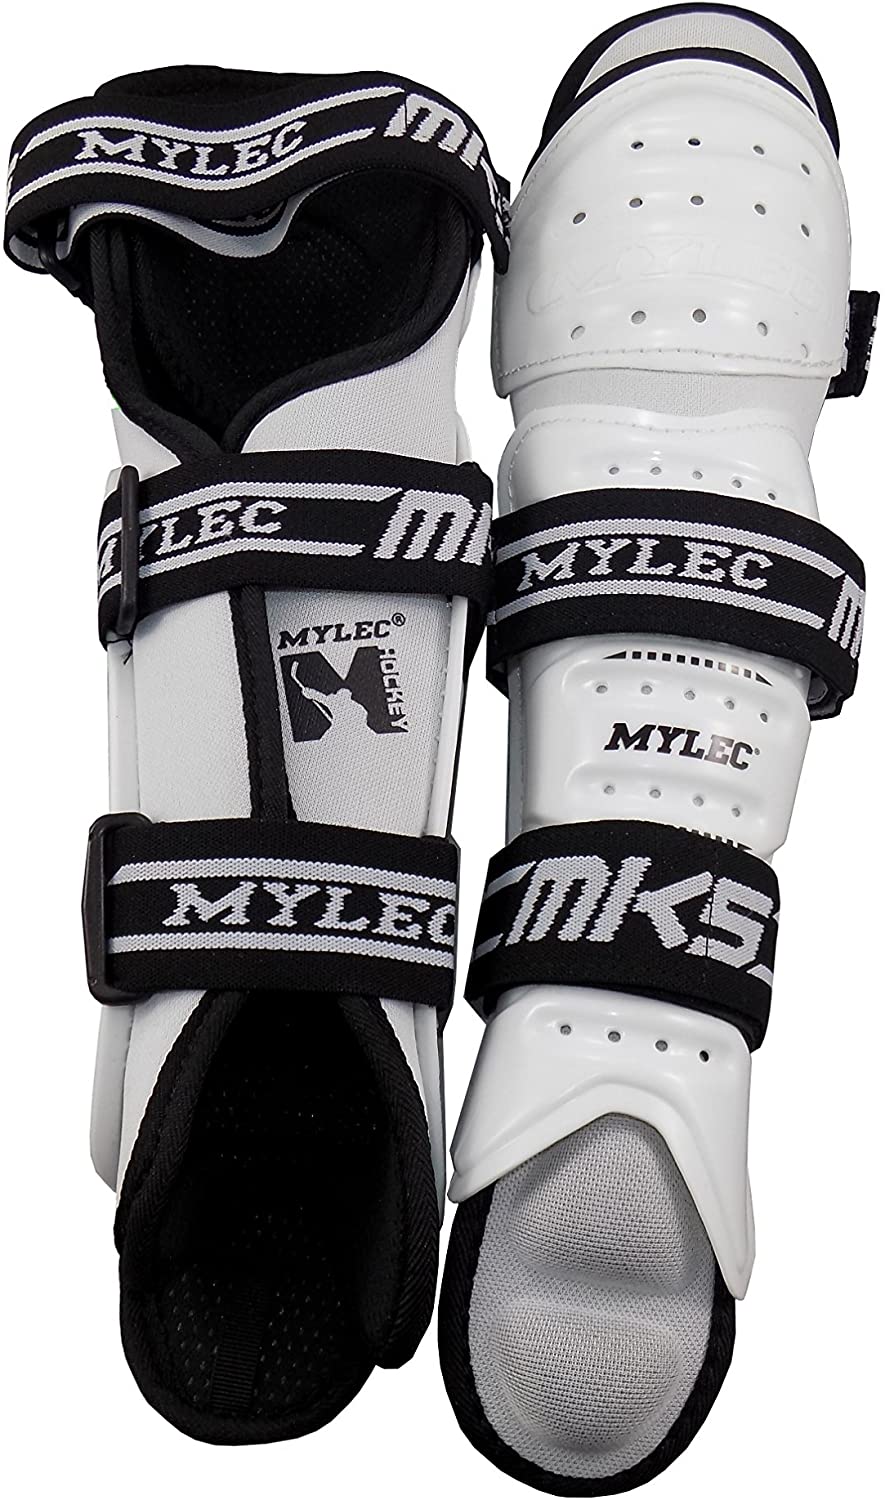 Mylec MK5 13" Pro Roller Hockey, Dek Hockey, Street Hockey Shinguards/Kneepads - White - Pro-Distributing